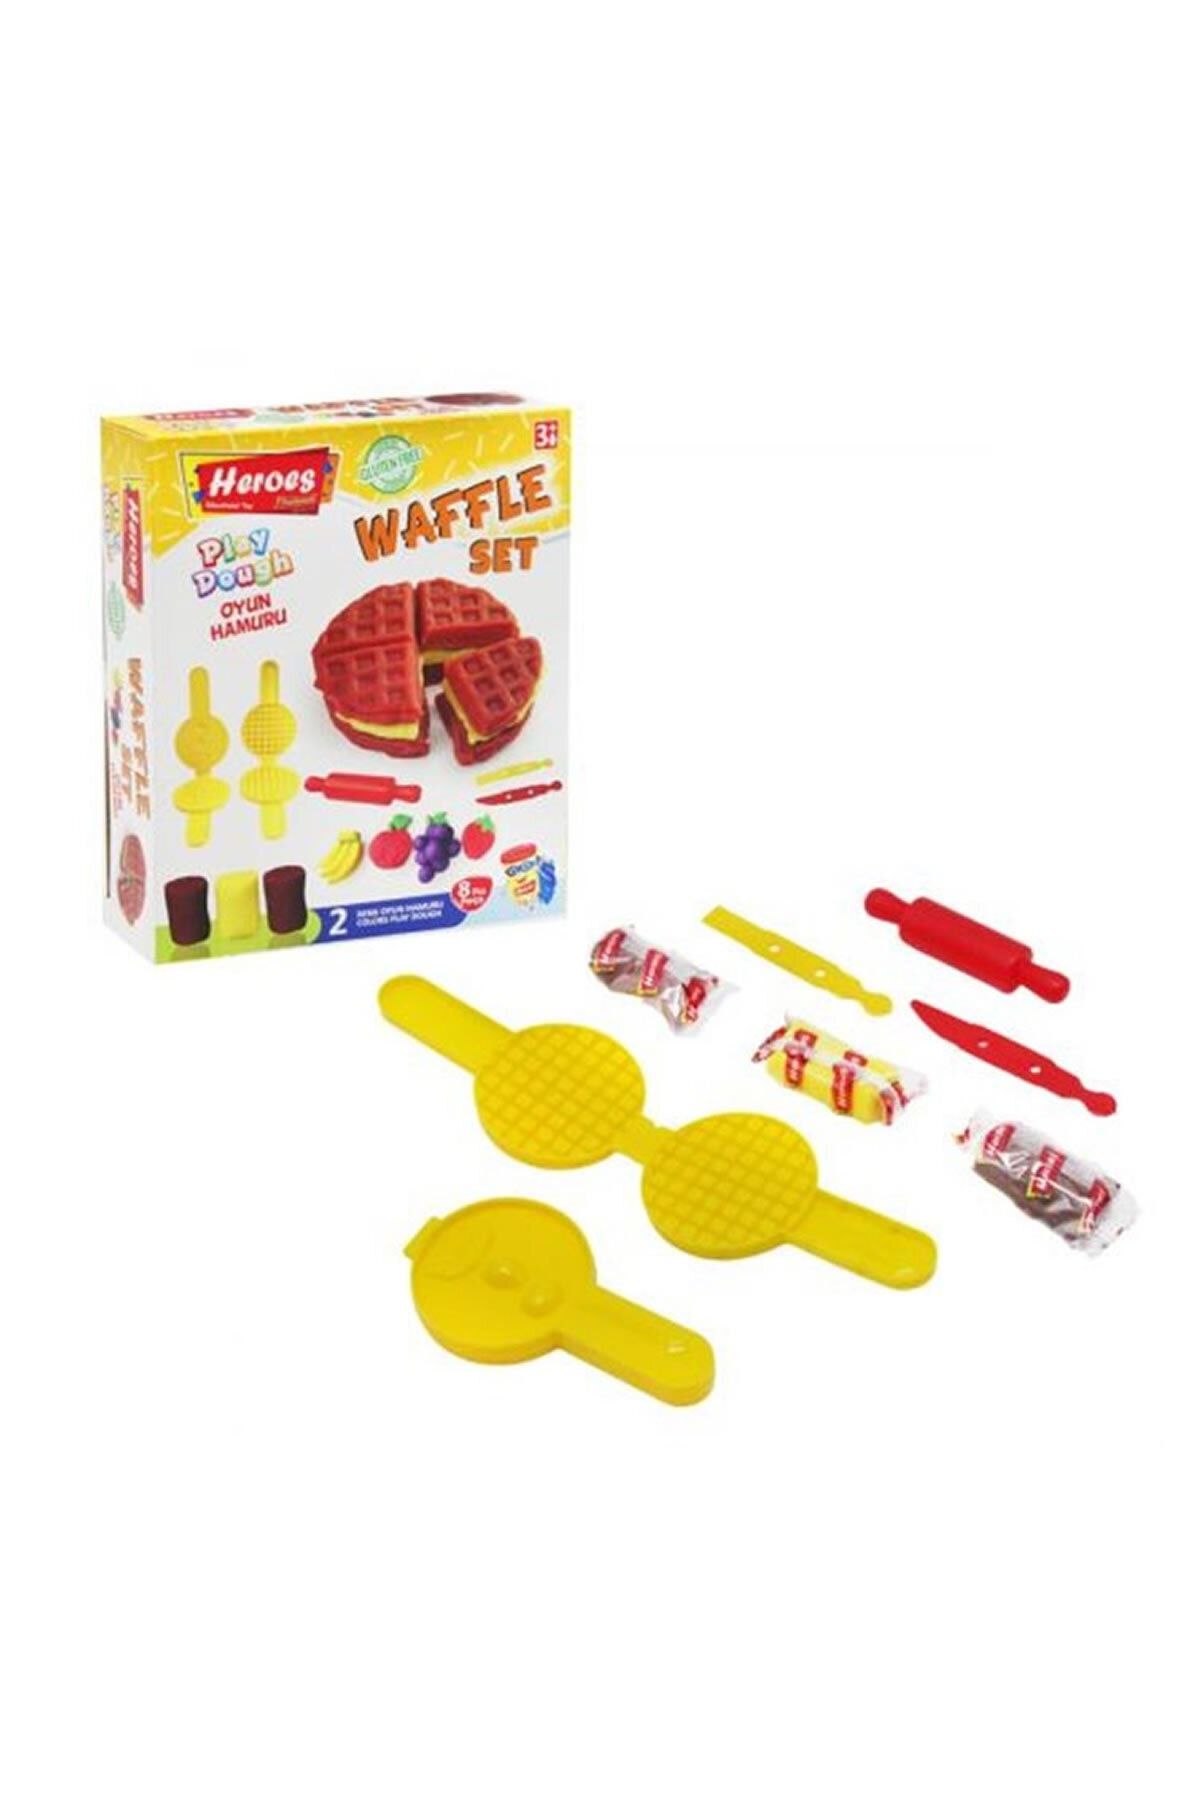 Eren Ern Heroes Küçük Kutulu Waffle Oyun Hamur Seti